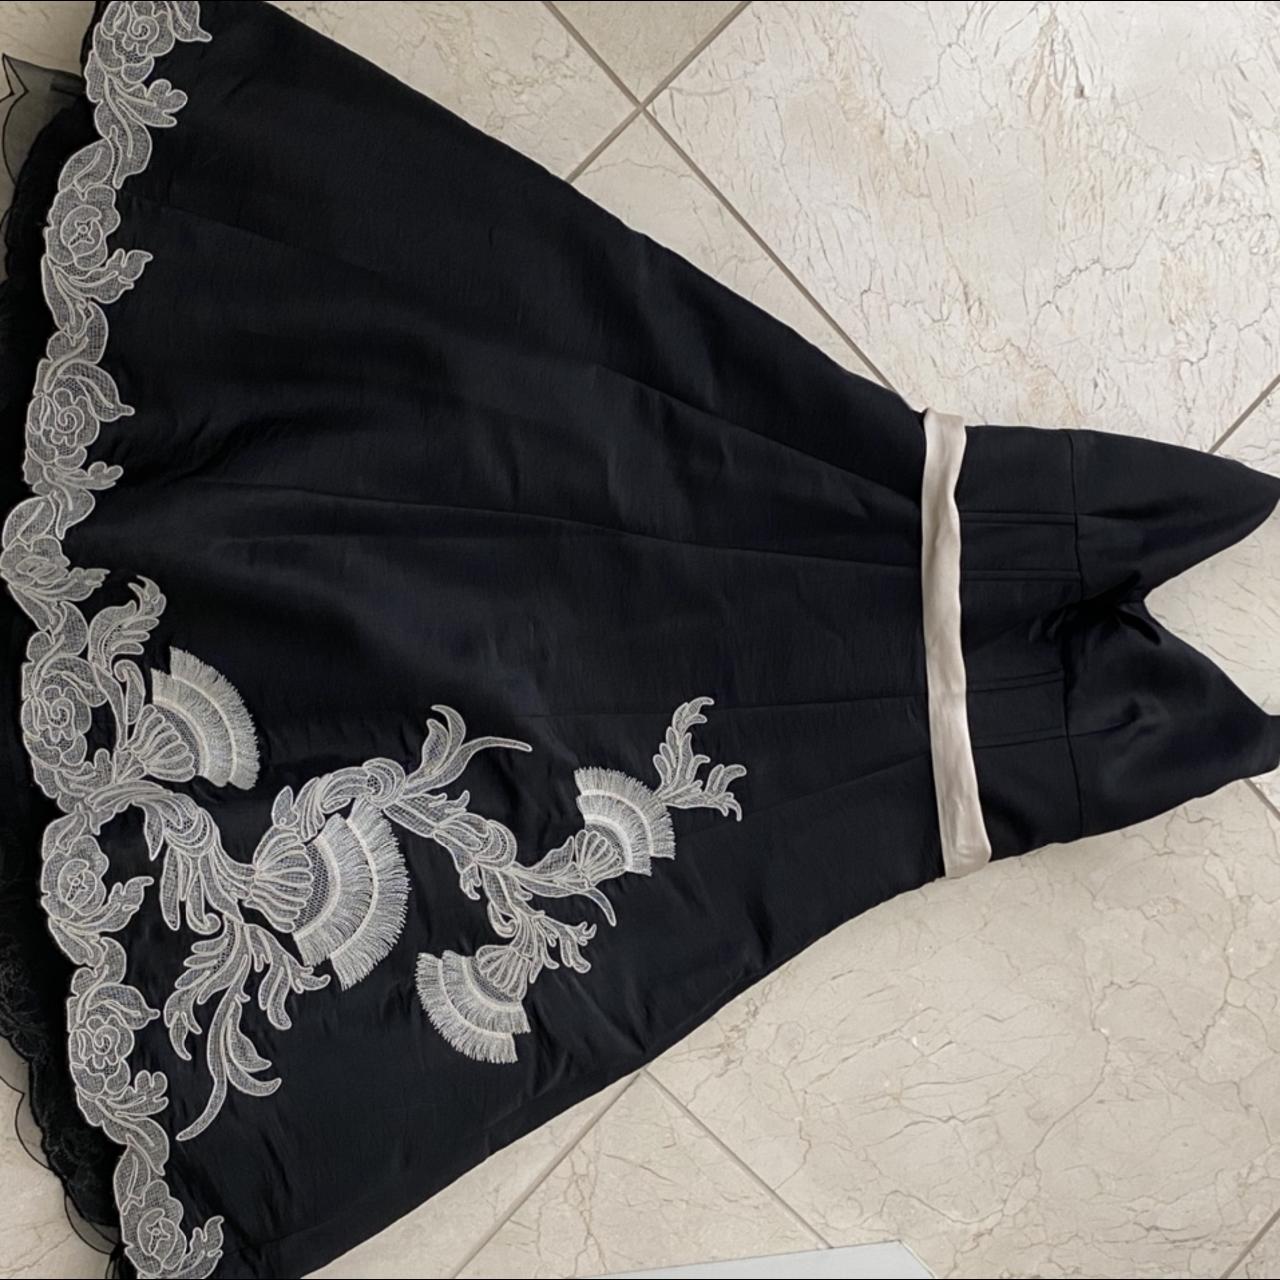 Karen Millen Women's Black Dress (3)